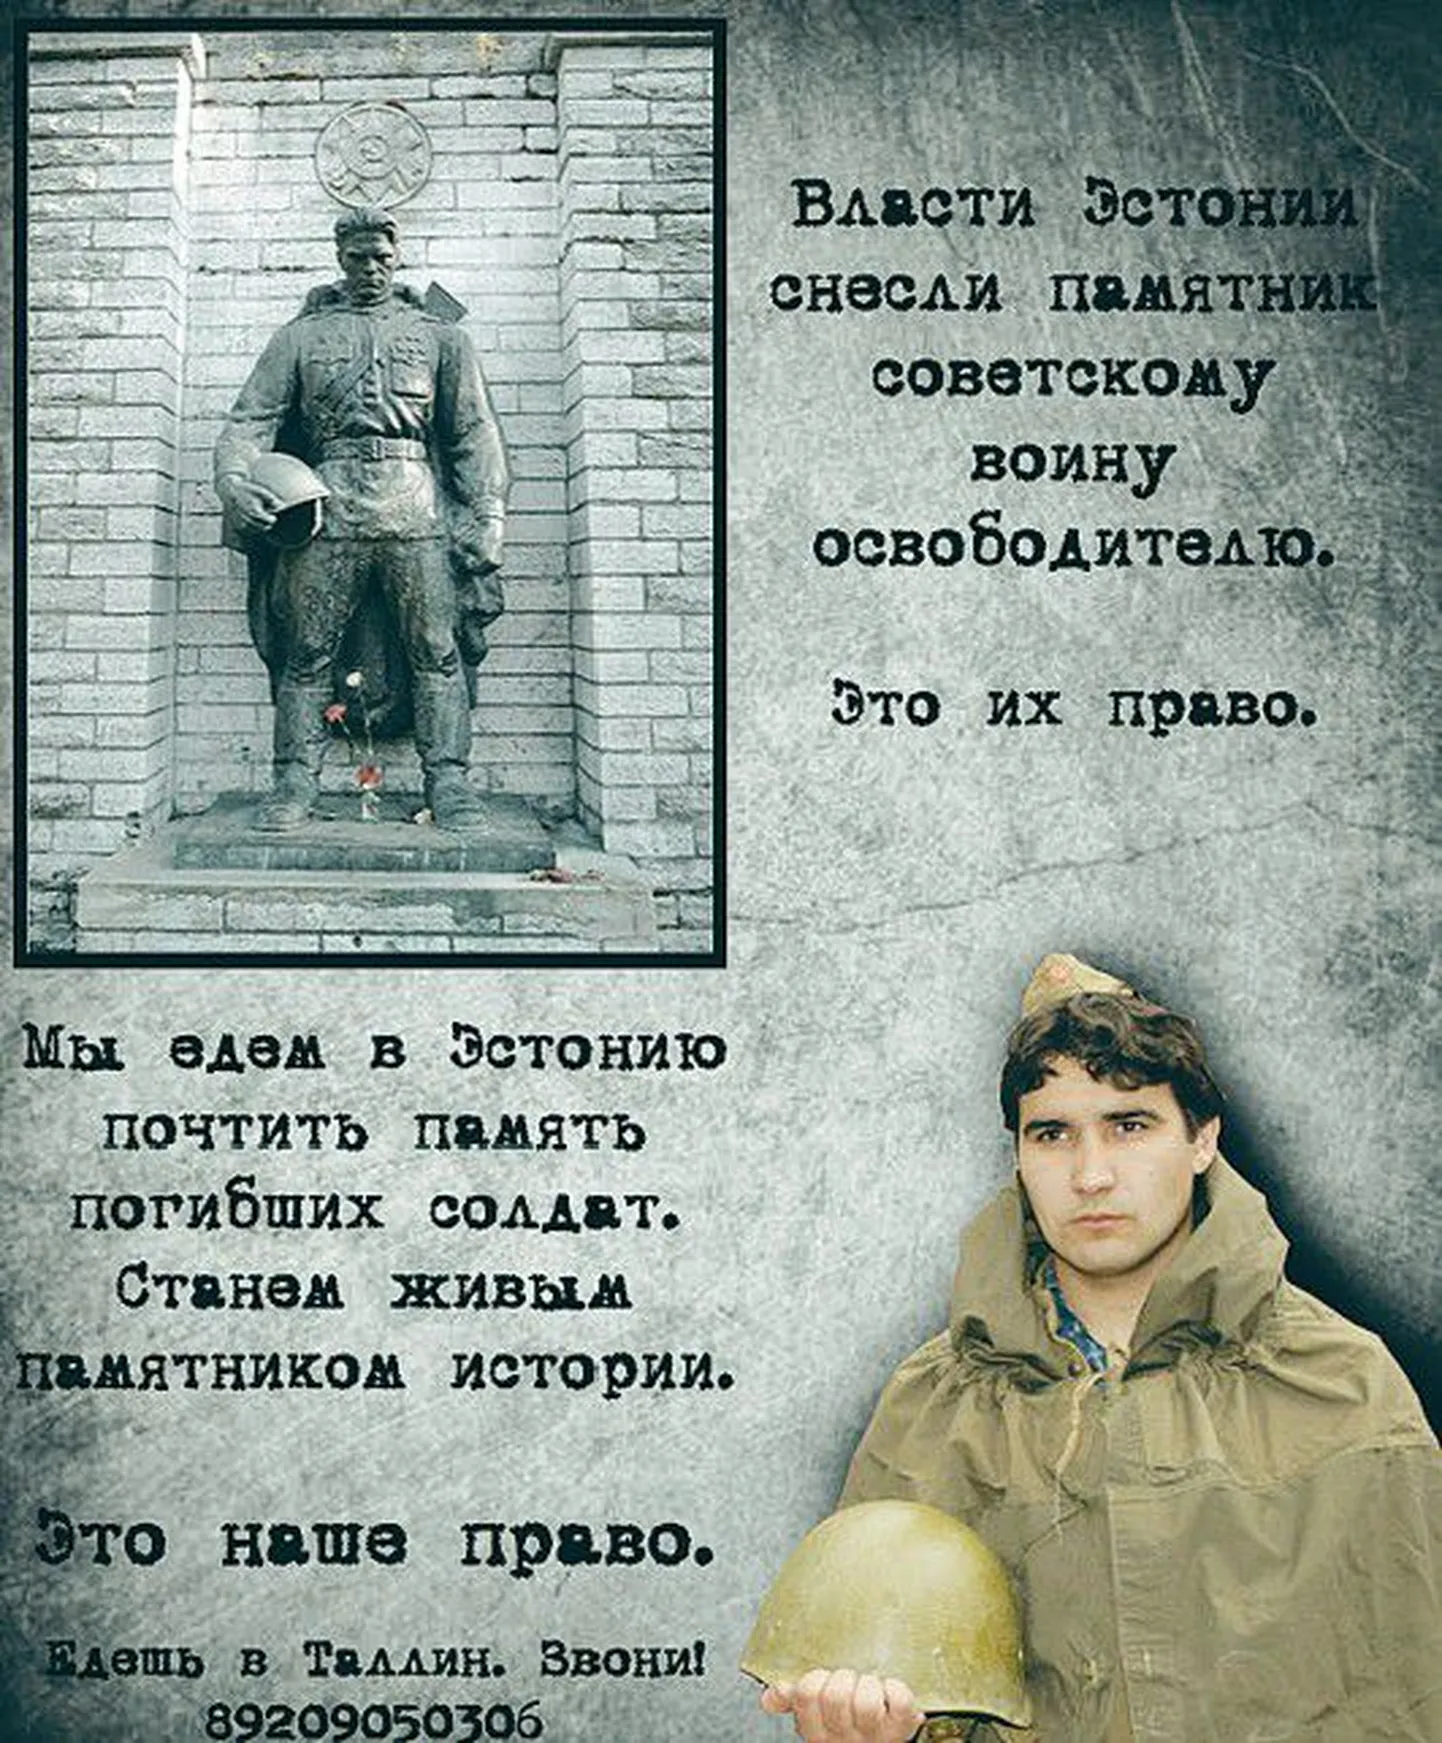 Пропагандистский плакат движения «Наши», призывавший в 2007 году российскую молодежь отправляться в Эстонию для участия в «вахтах памяти» у Бронзового солдата.